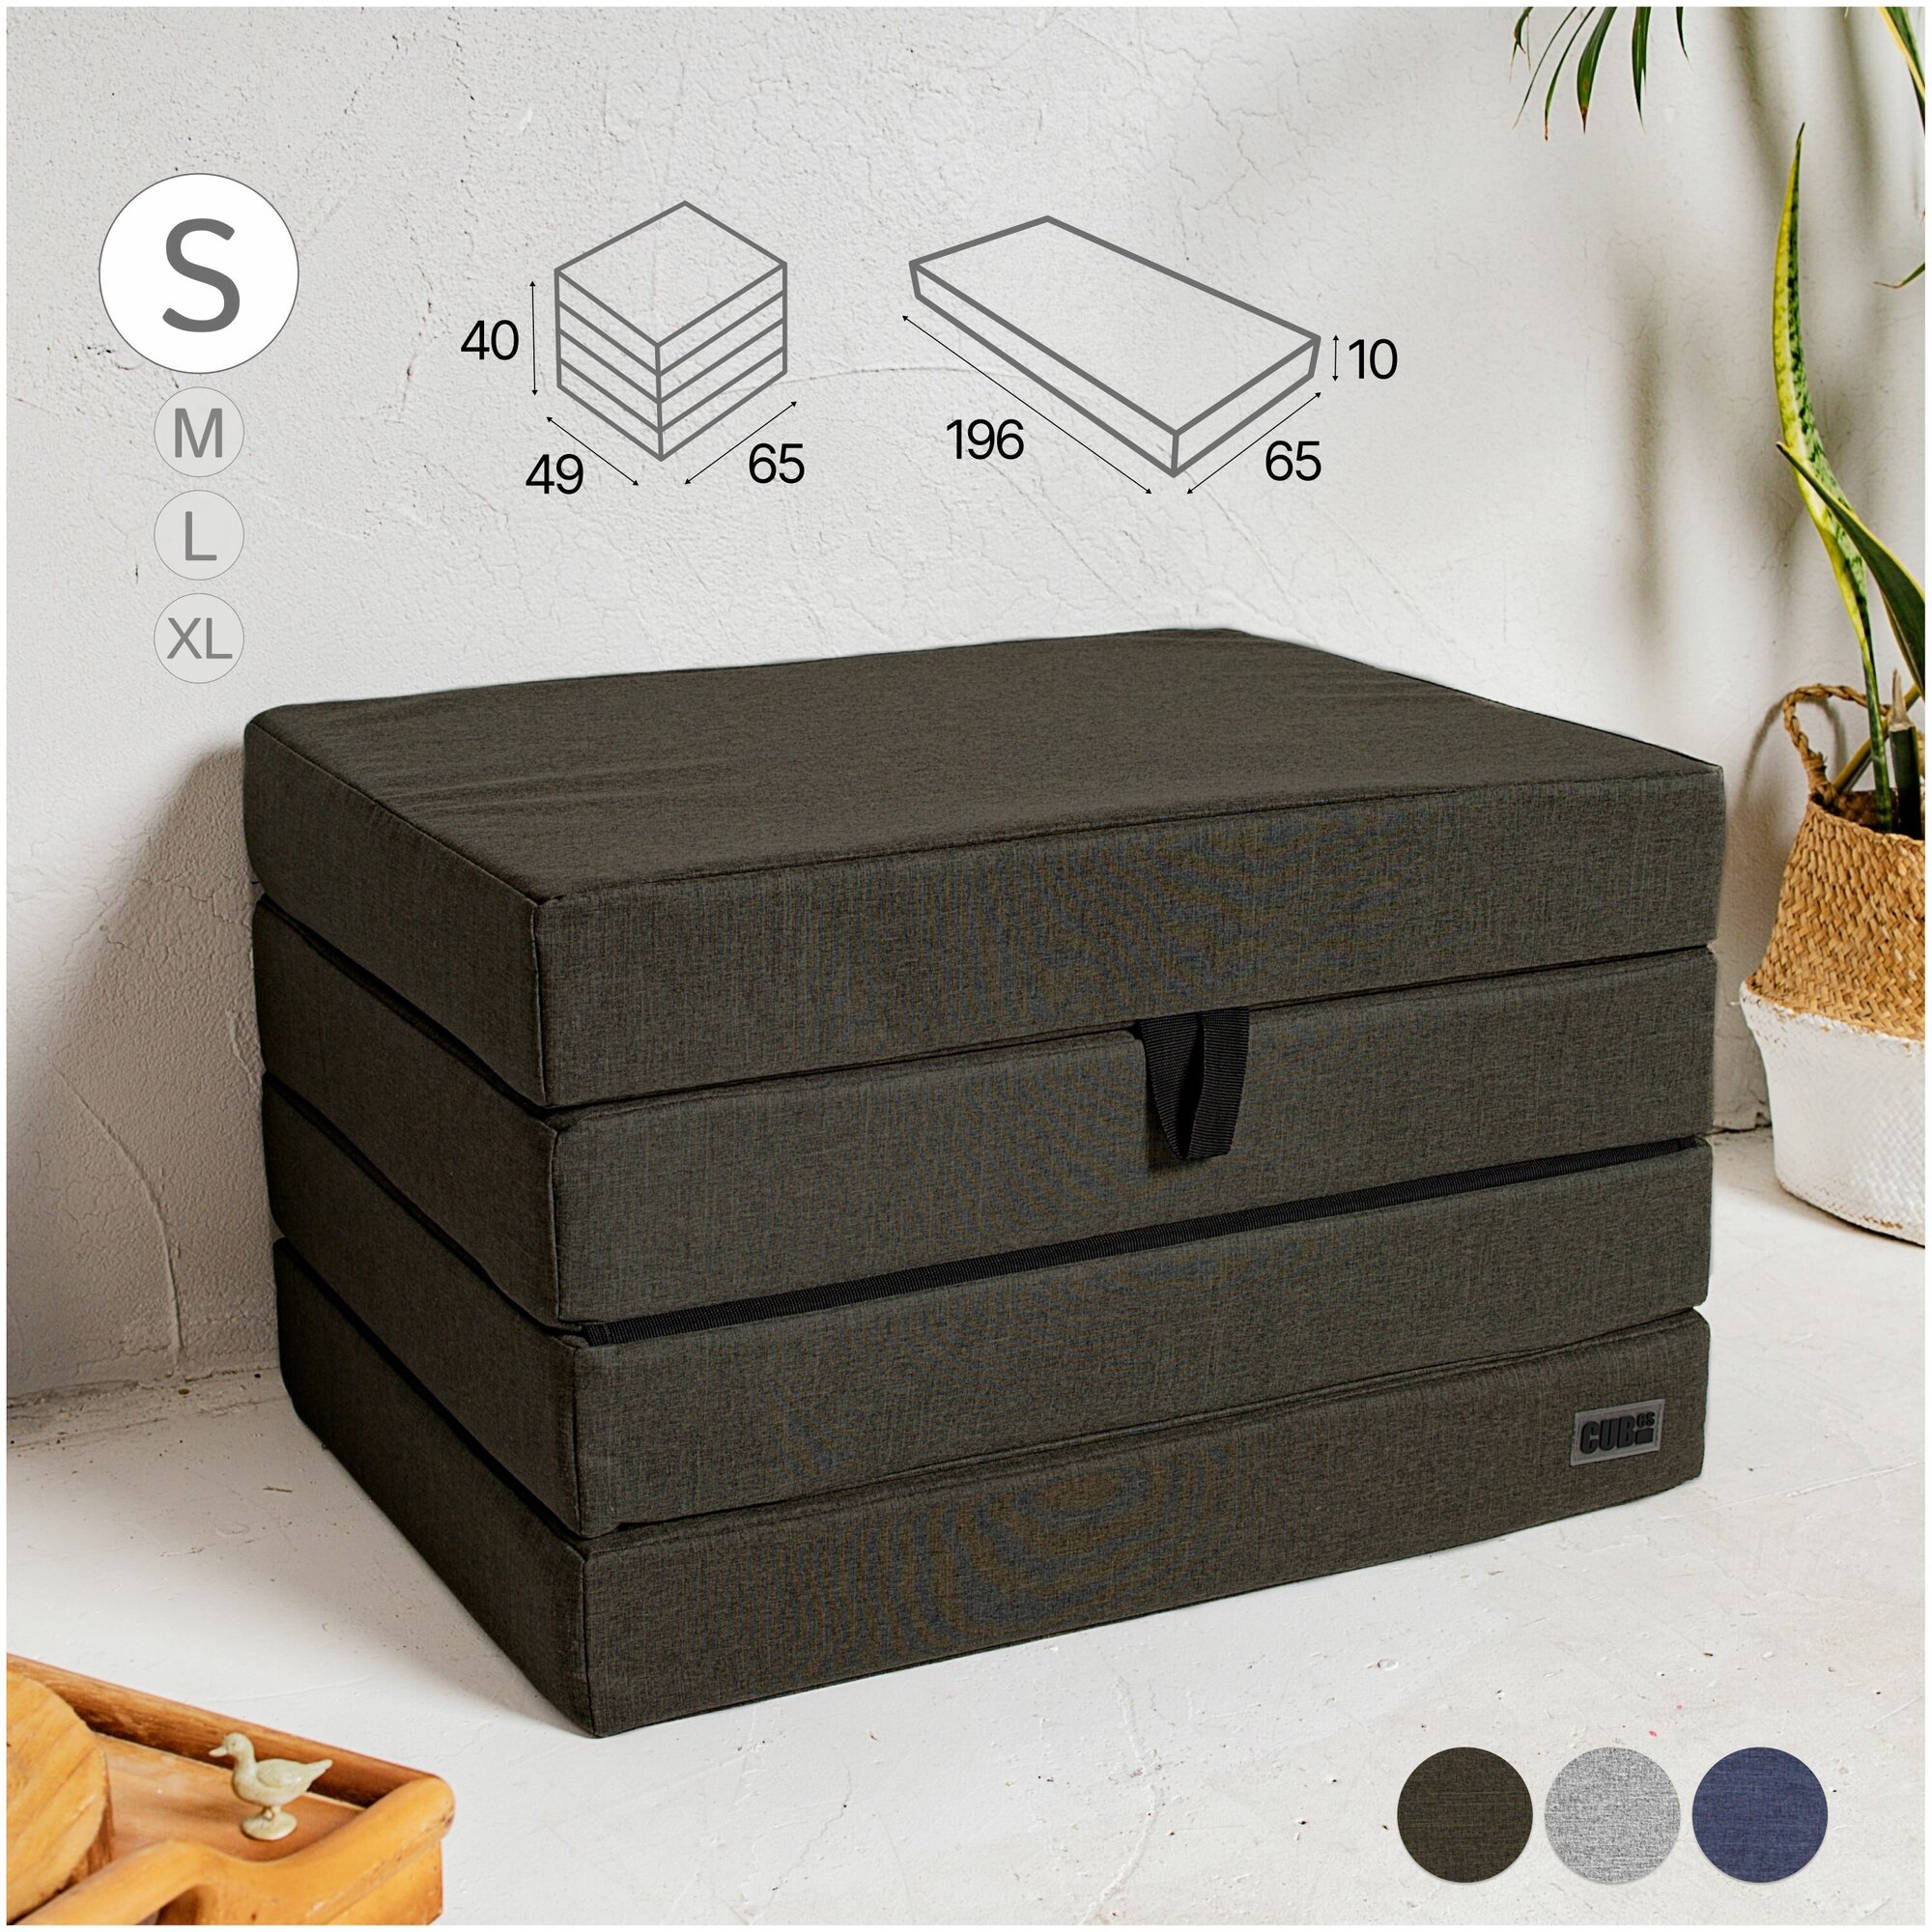 Кресло раскладное пуф матрас Cubes S (4 секции, оливковый)